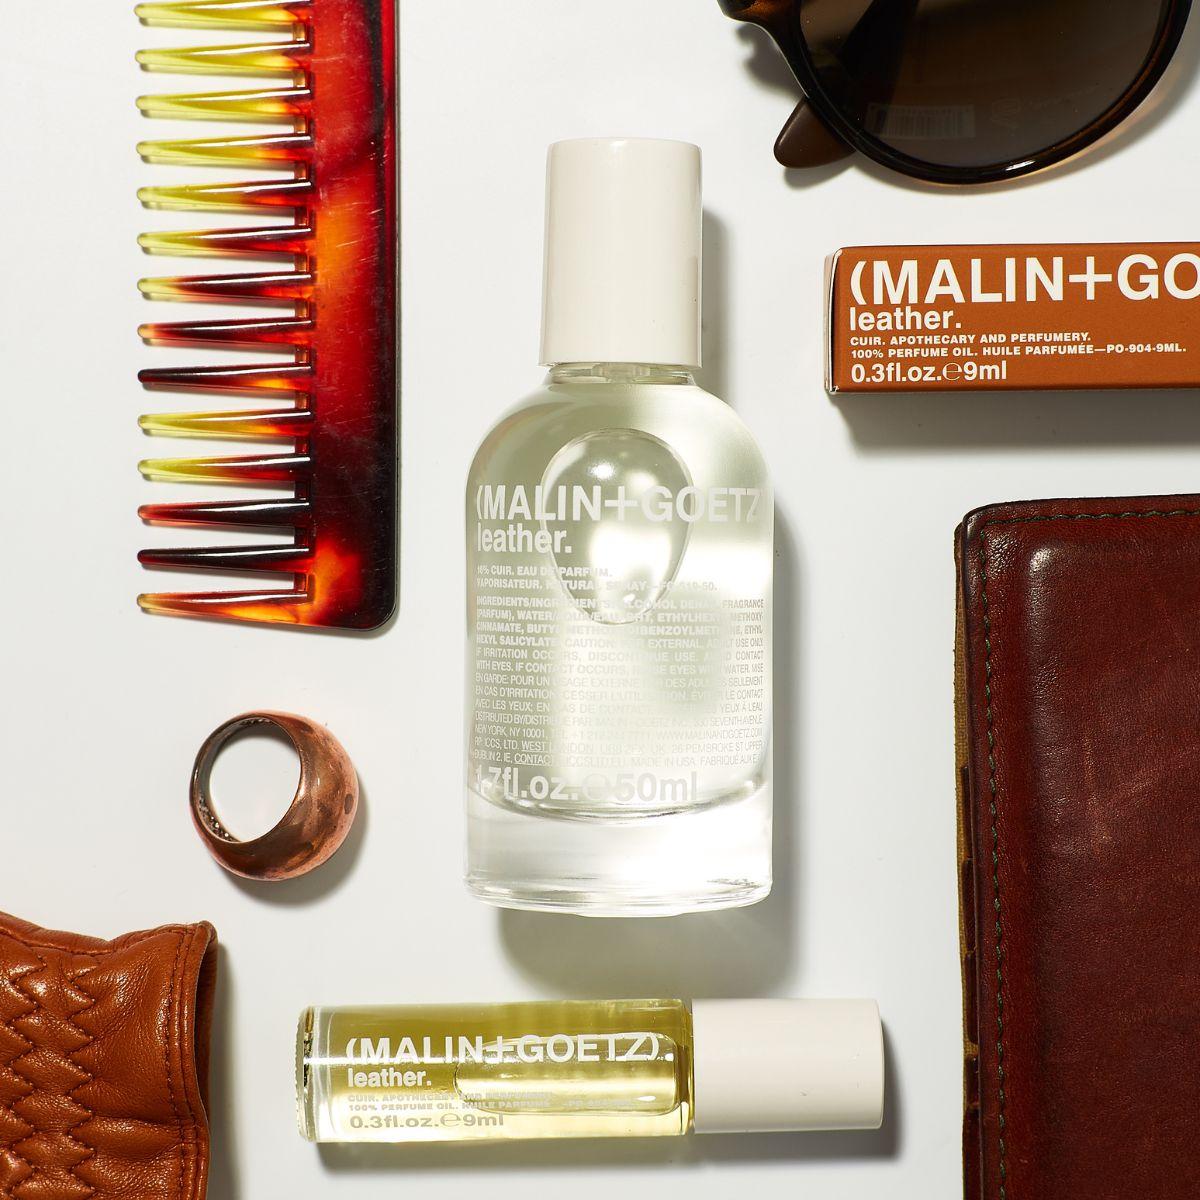 Afbeelding van Leather eau de parfum van het merk Malin + Goetz